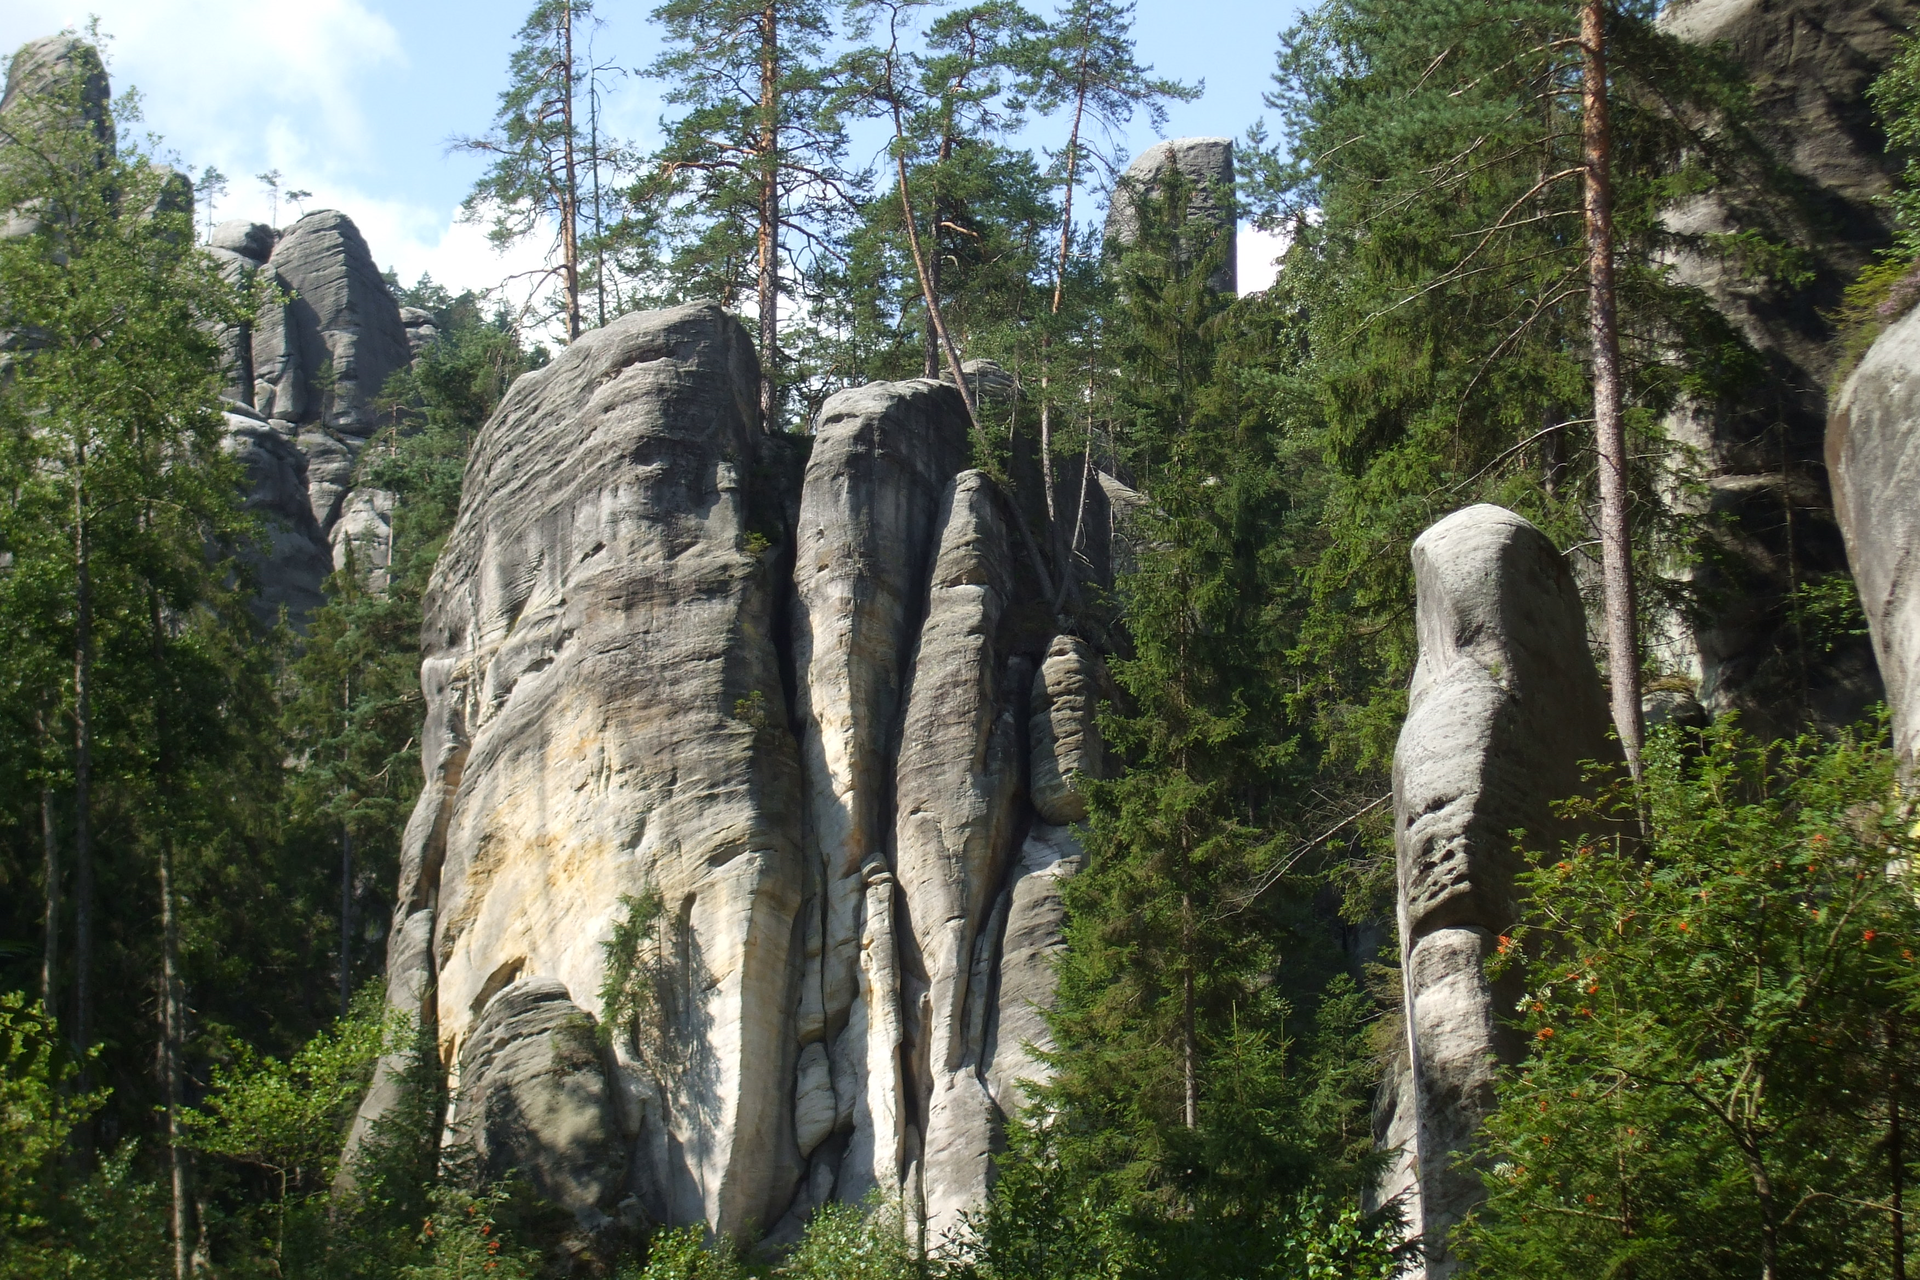 Fotografia prezentuje wysokie, o płaskich szczytach, skały Gór Stołowych, pomiędzy którymi rosną drzewa iglaste.